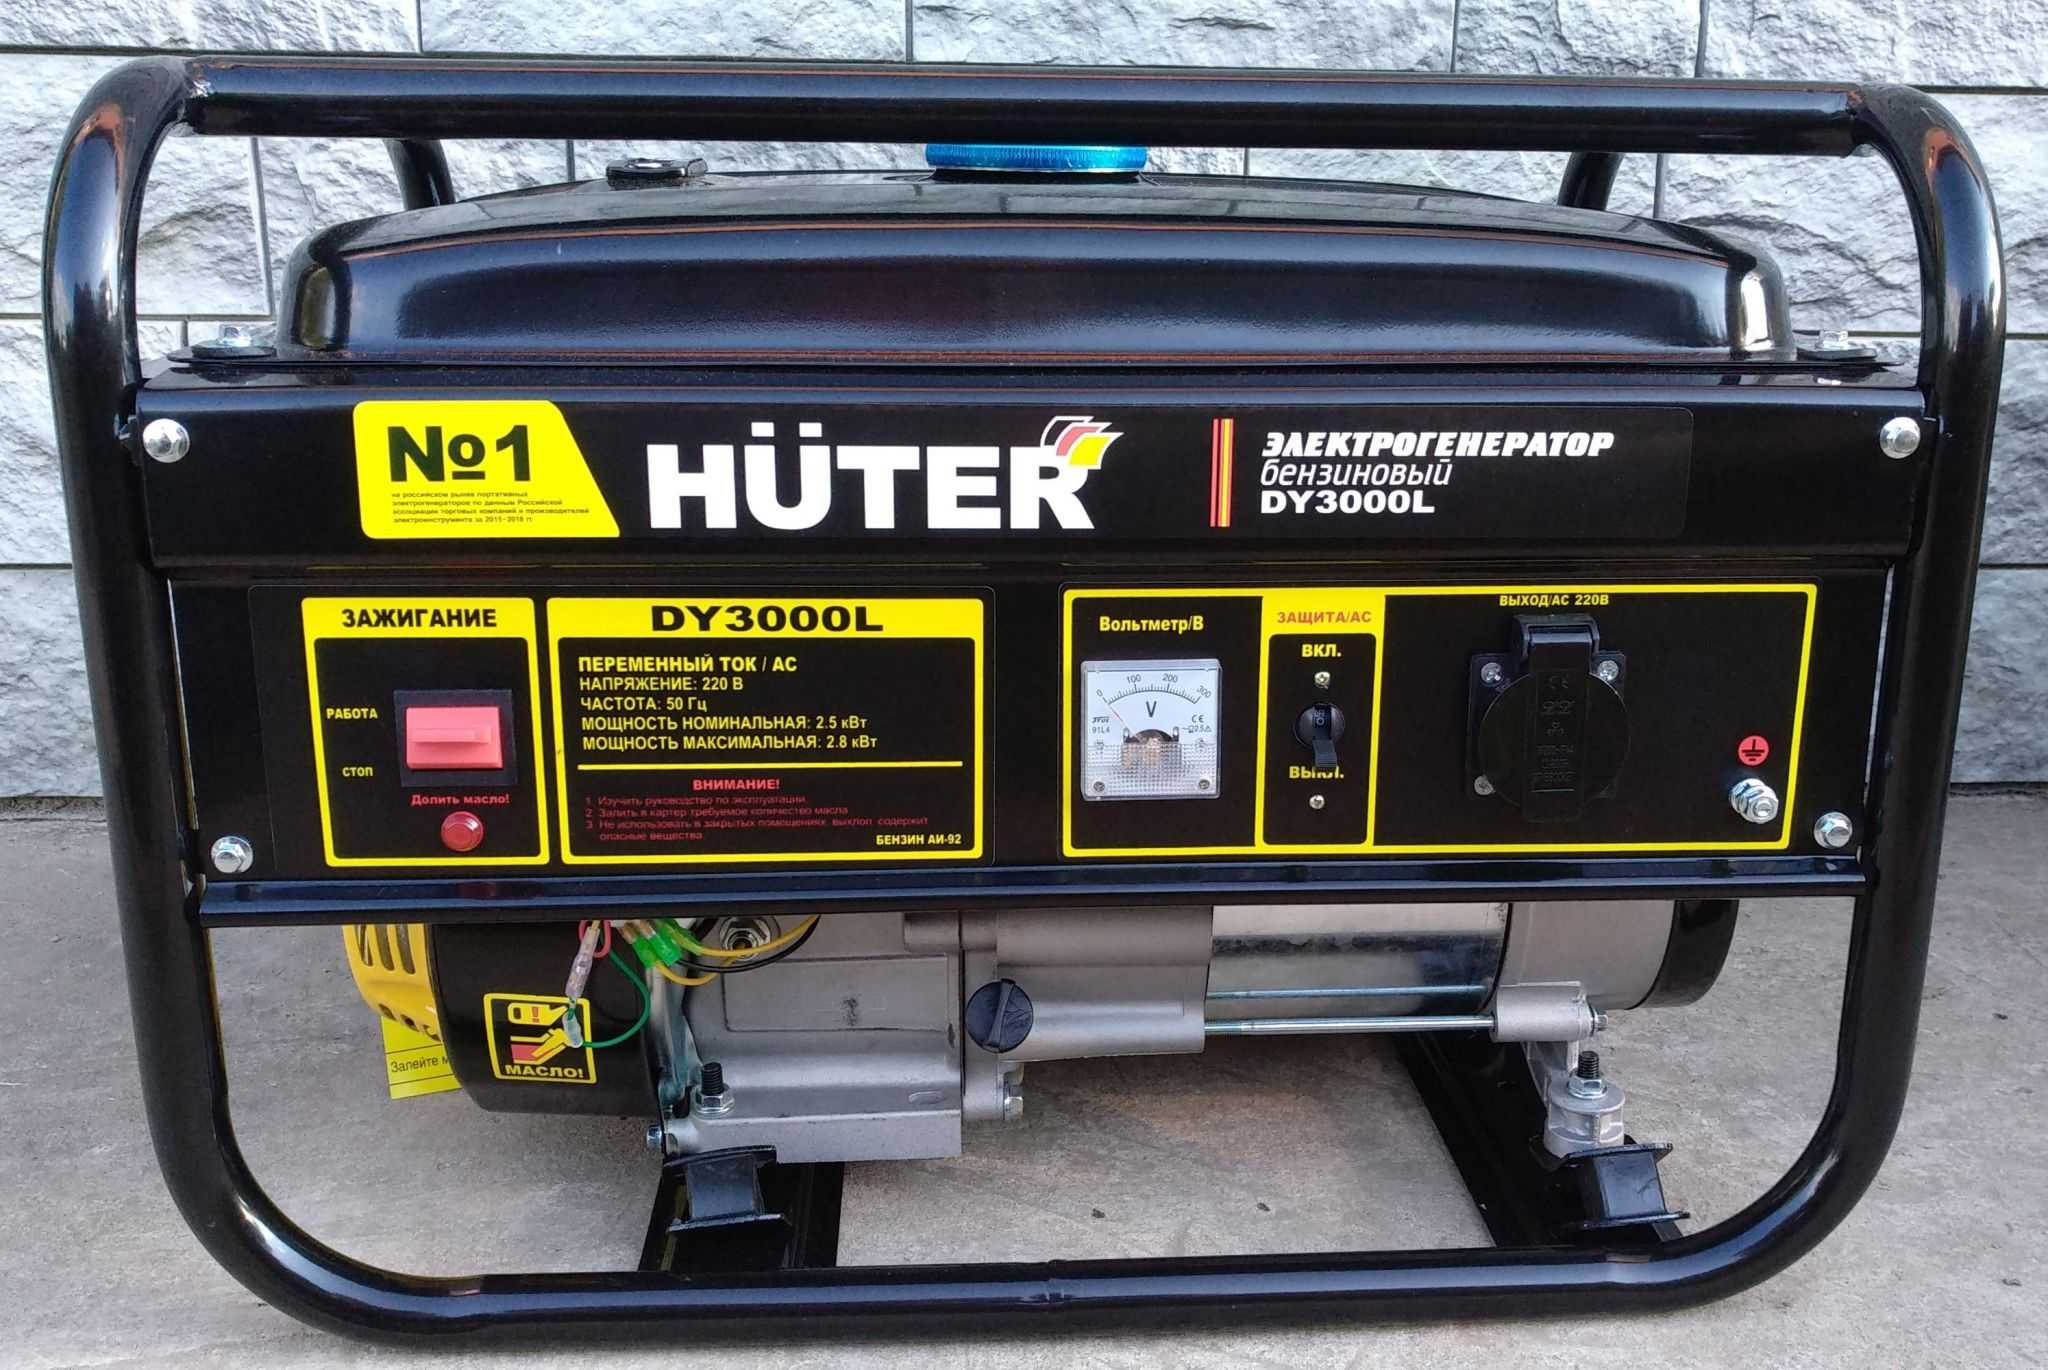 Бензиновые генераторы huter (хутер) цена, характеристики и особенности